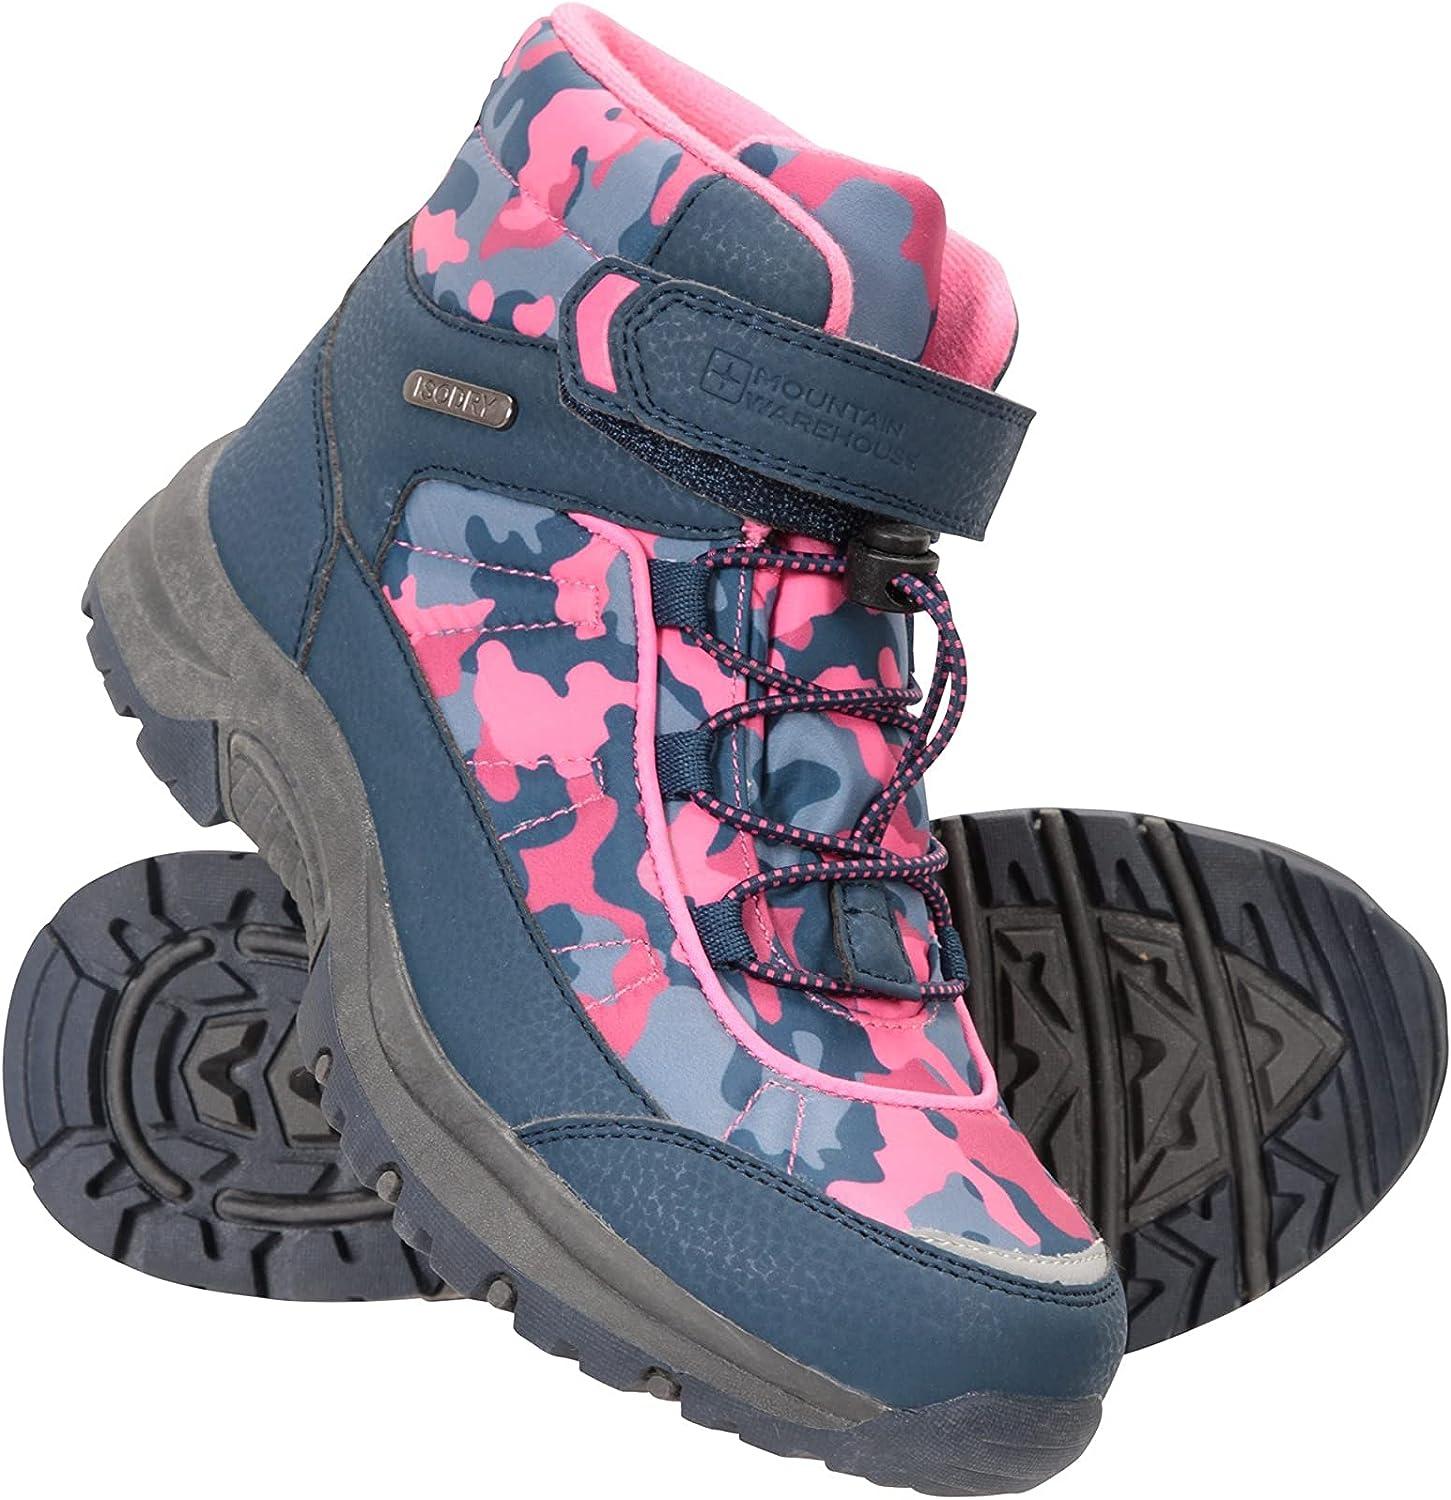 Mountain Warehouse Camo Waterproof Kids Boots - Casual Walking